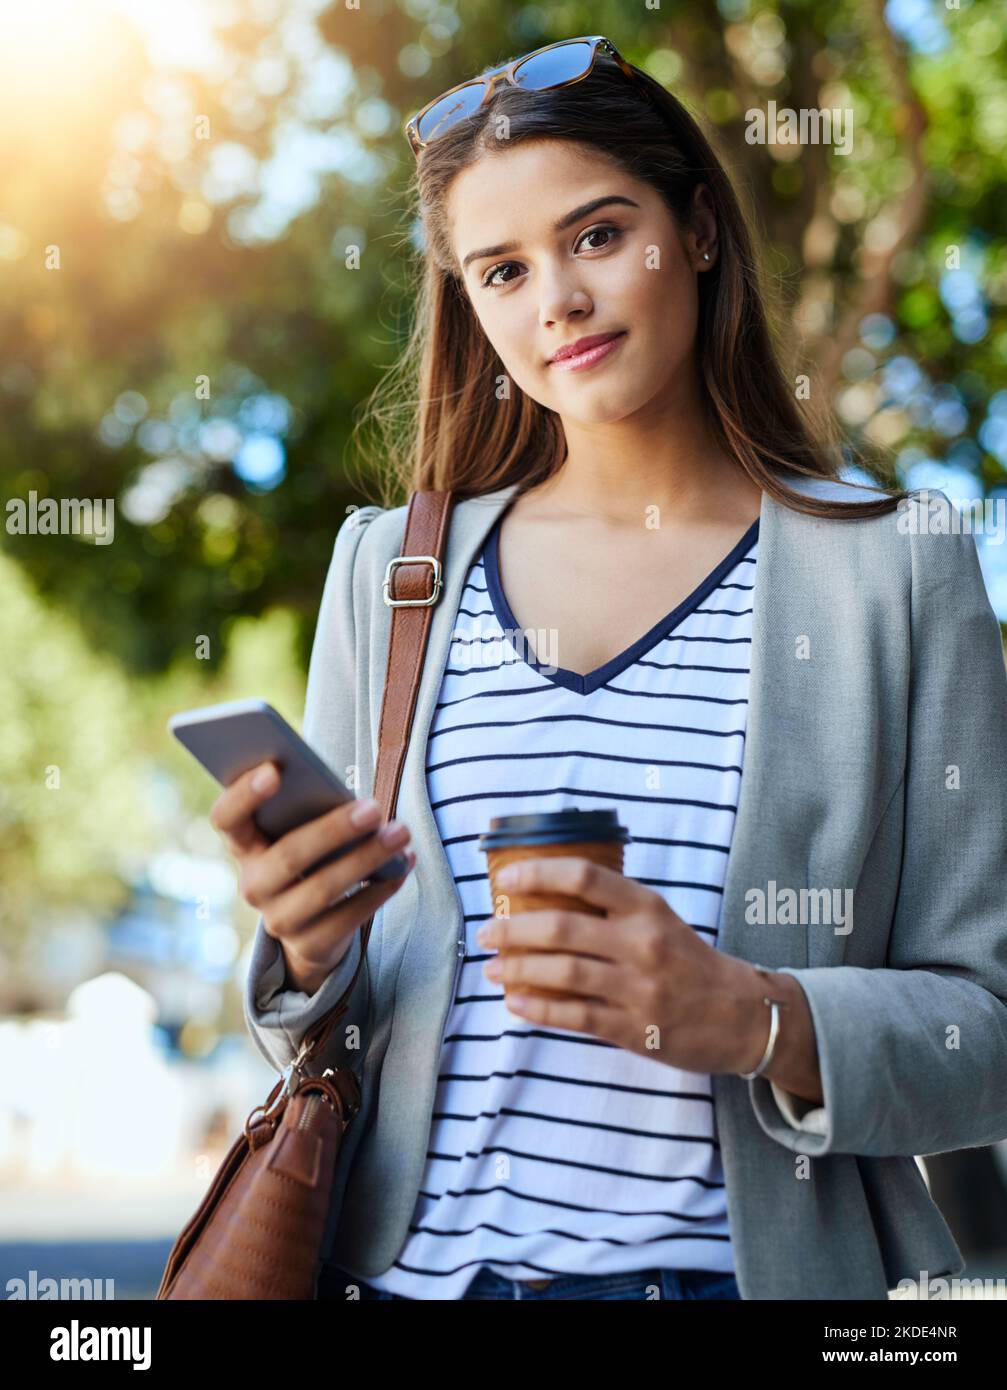 La comunicazione è fondamentale per il business. Ritratto ritagliato di una giovane donna attraente utilizzando il suo cellulare mentre si è in viaggio per lavoro. Foto Stock